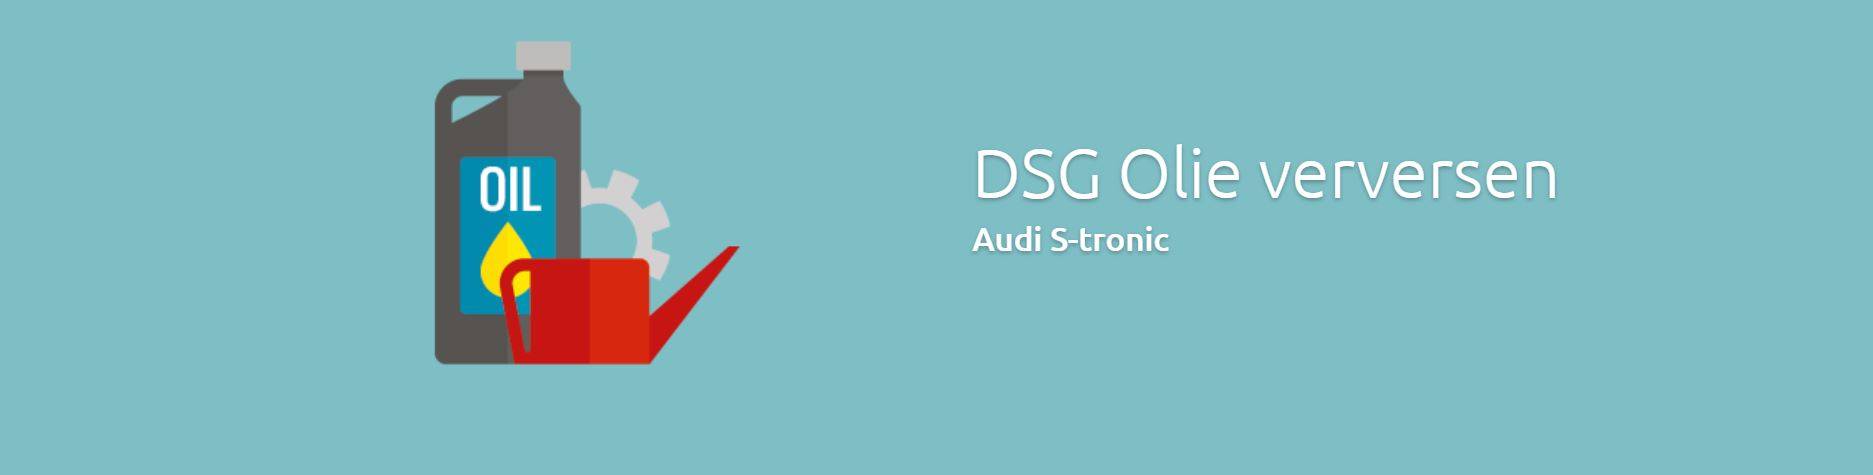 Audi DSG Olie Verversen Audi S-tronic Olie Vervangen bij schakel klachten DSG Service Dealers hebben zich daarnaast gespecialiseerd in onderhoud en reparatie